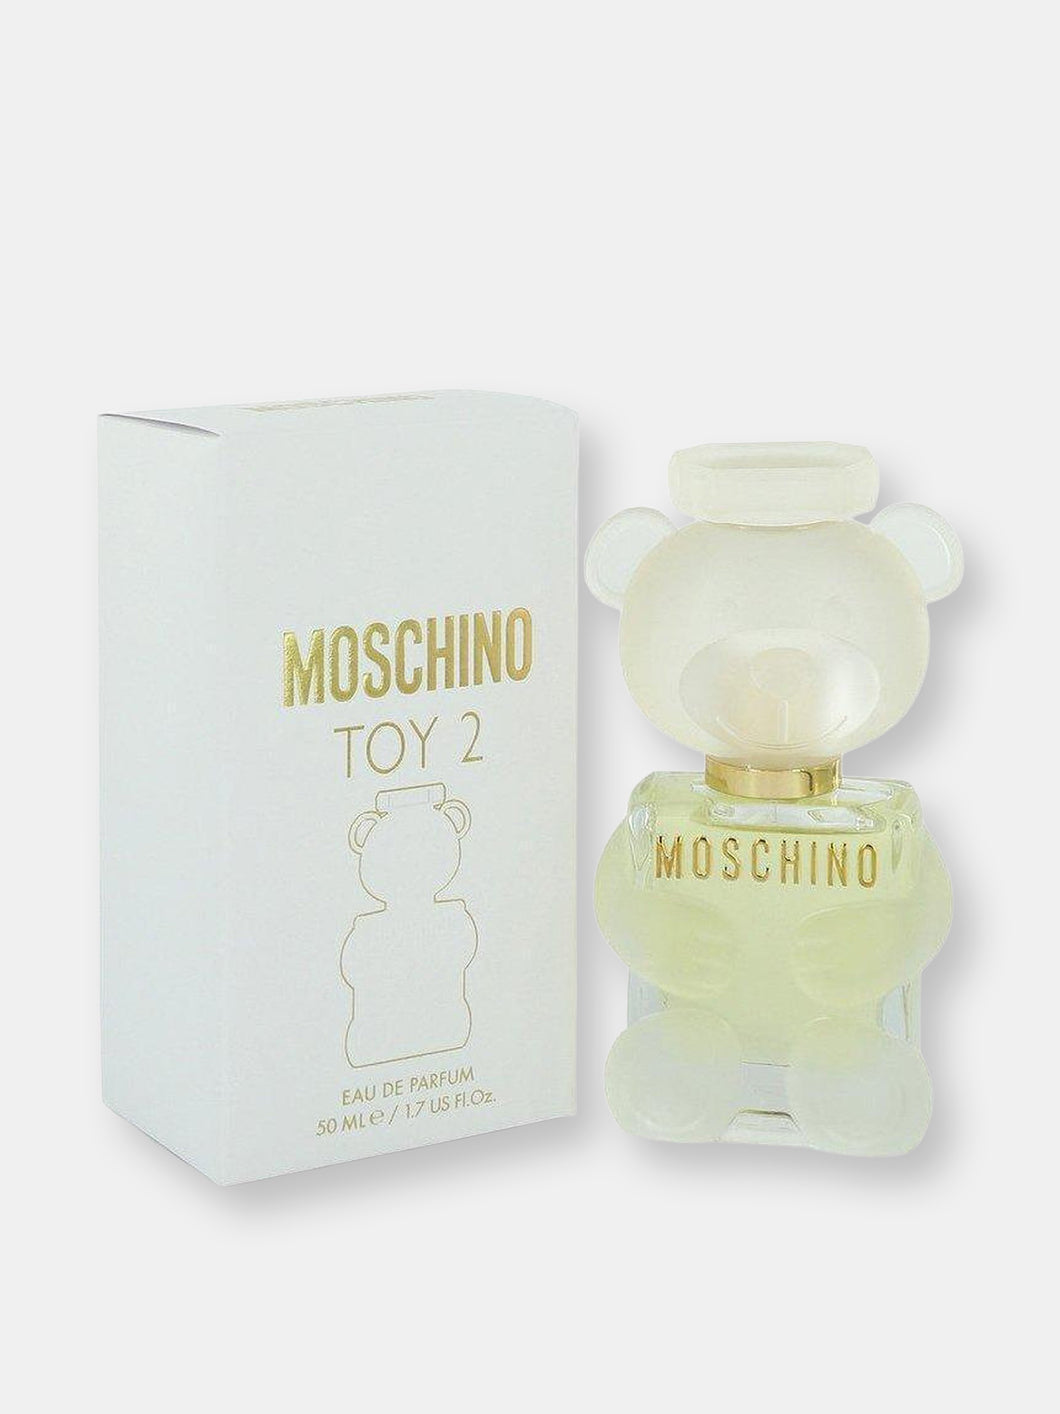 Moschino Toy 2 by Moschino Eau De Parfum Spray 1.7 oz